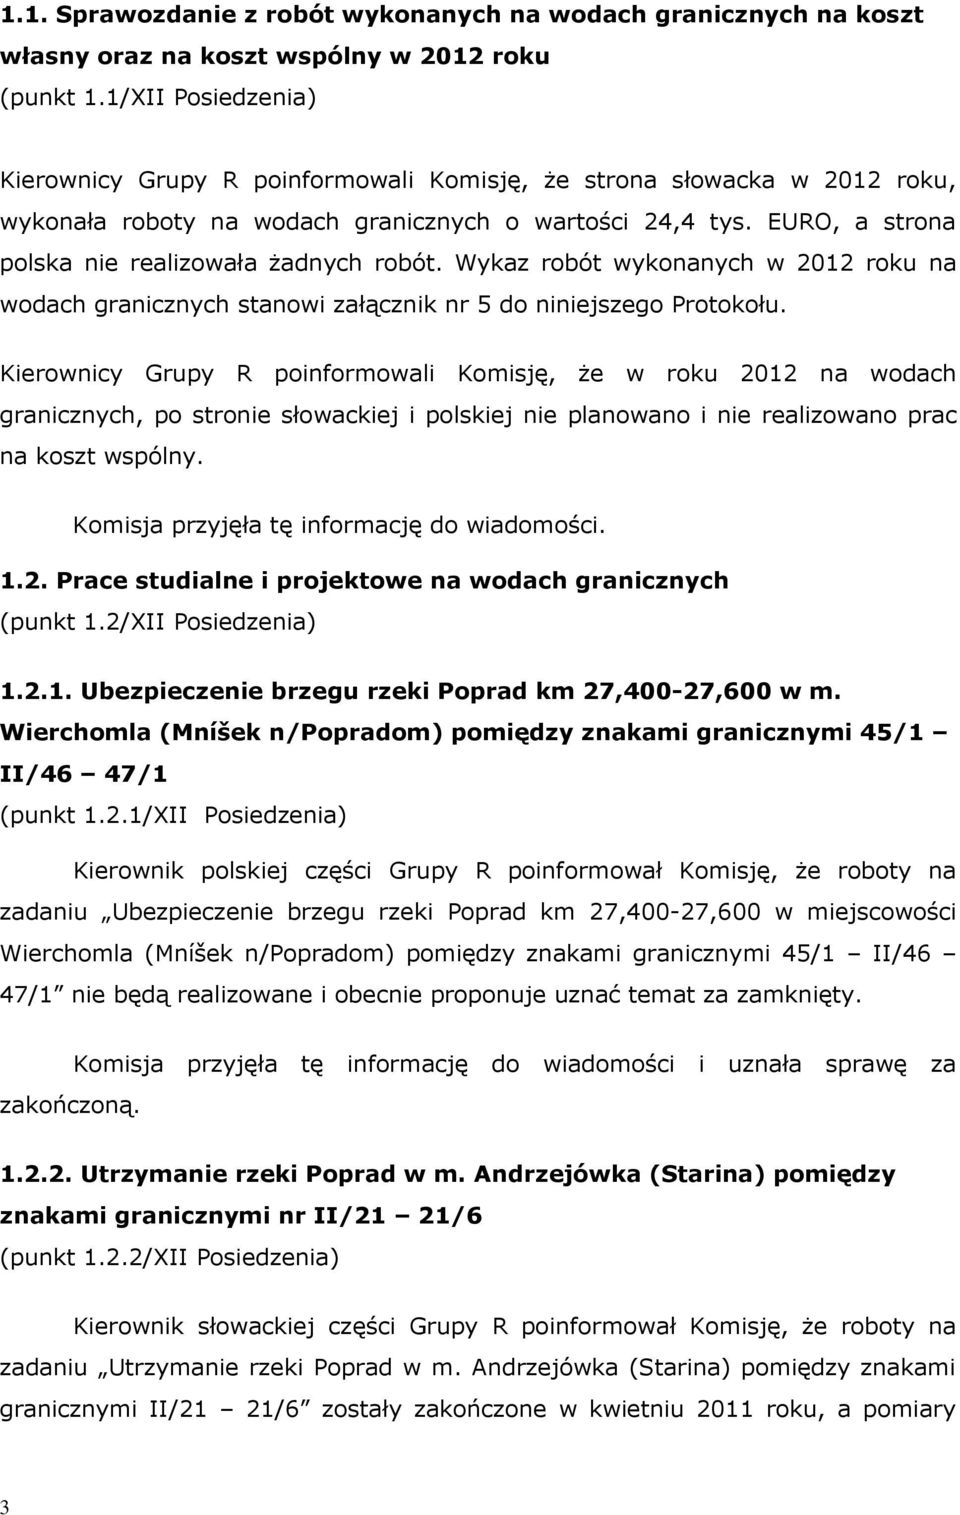 EURO, a strona polska nie realizowała żadnych robót. Wykaz robót wykonanych w 2012 roku na wodach granicznych stanowi załącznik nr 5 do niniejszego Protokołu.